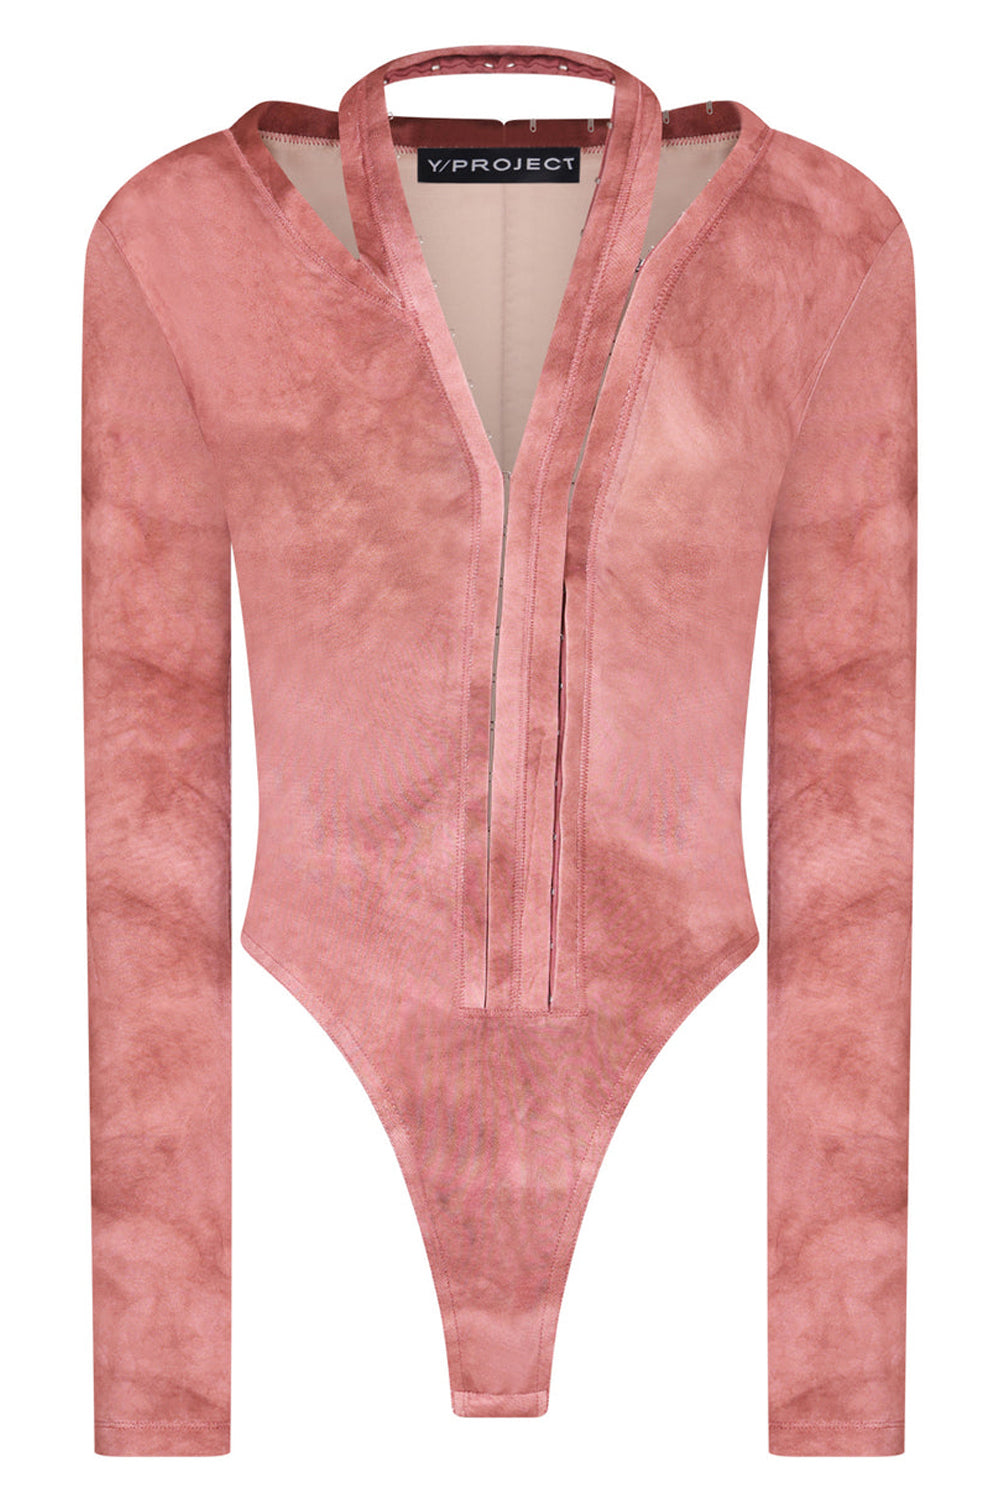 Blush Pink Bodysuit - Crushed Velvet Bodysuit - Long Sleeve Deep V